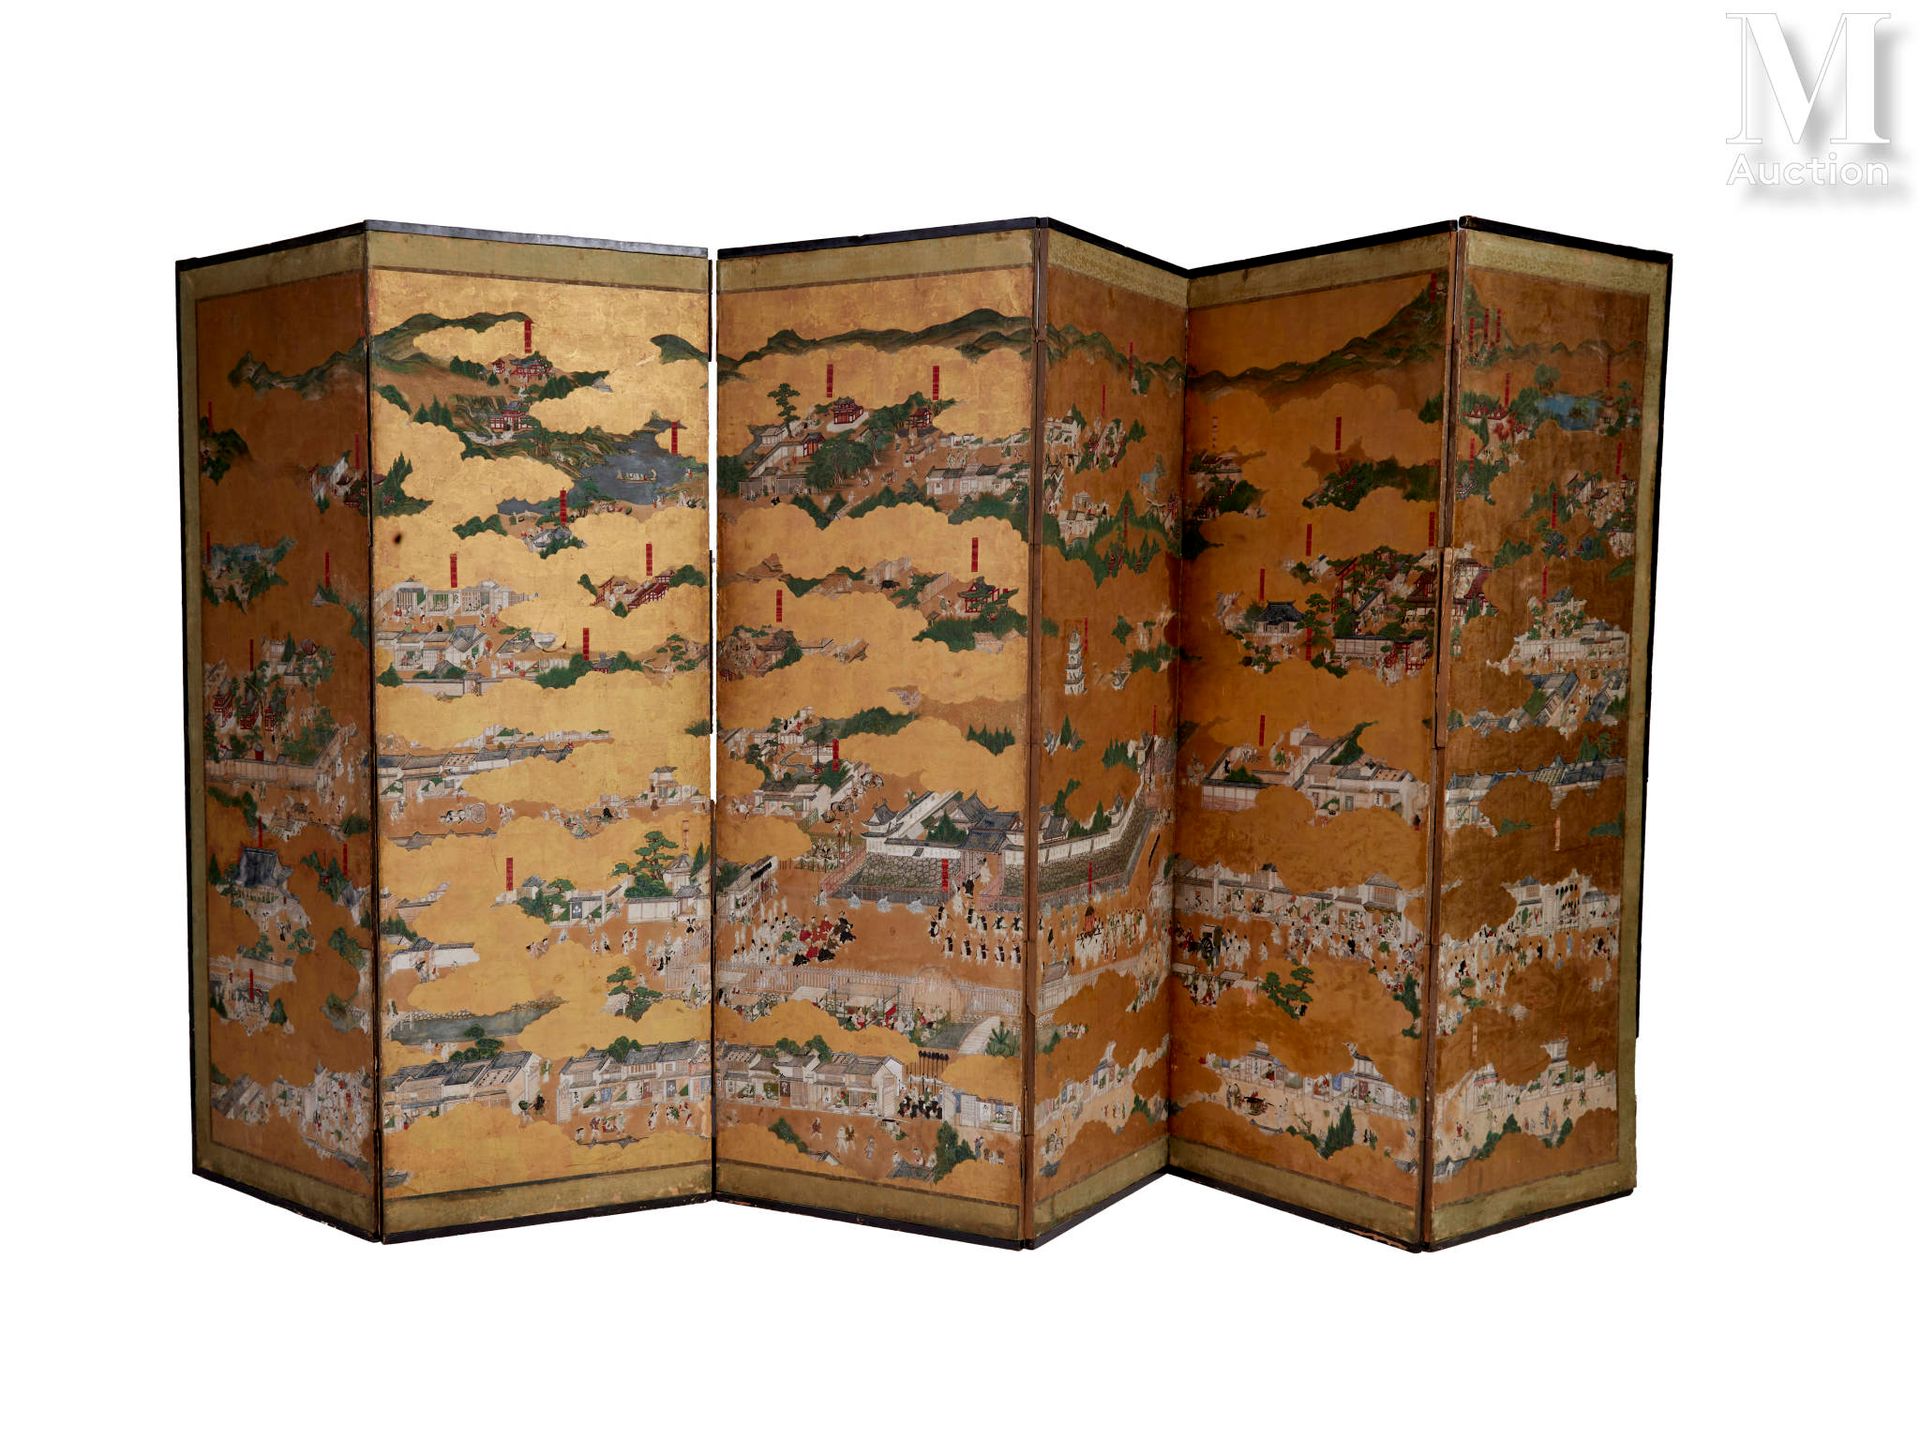 JAPON, XVIIIe siècle 六叶折叠式屏幕

纸上彩色和金色墨水，描绘了在金色云彩中生动的京都街景。
高度：174厘米
宽度（叶子）：62厘米
意&hellip;